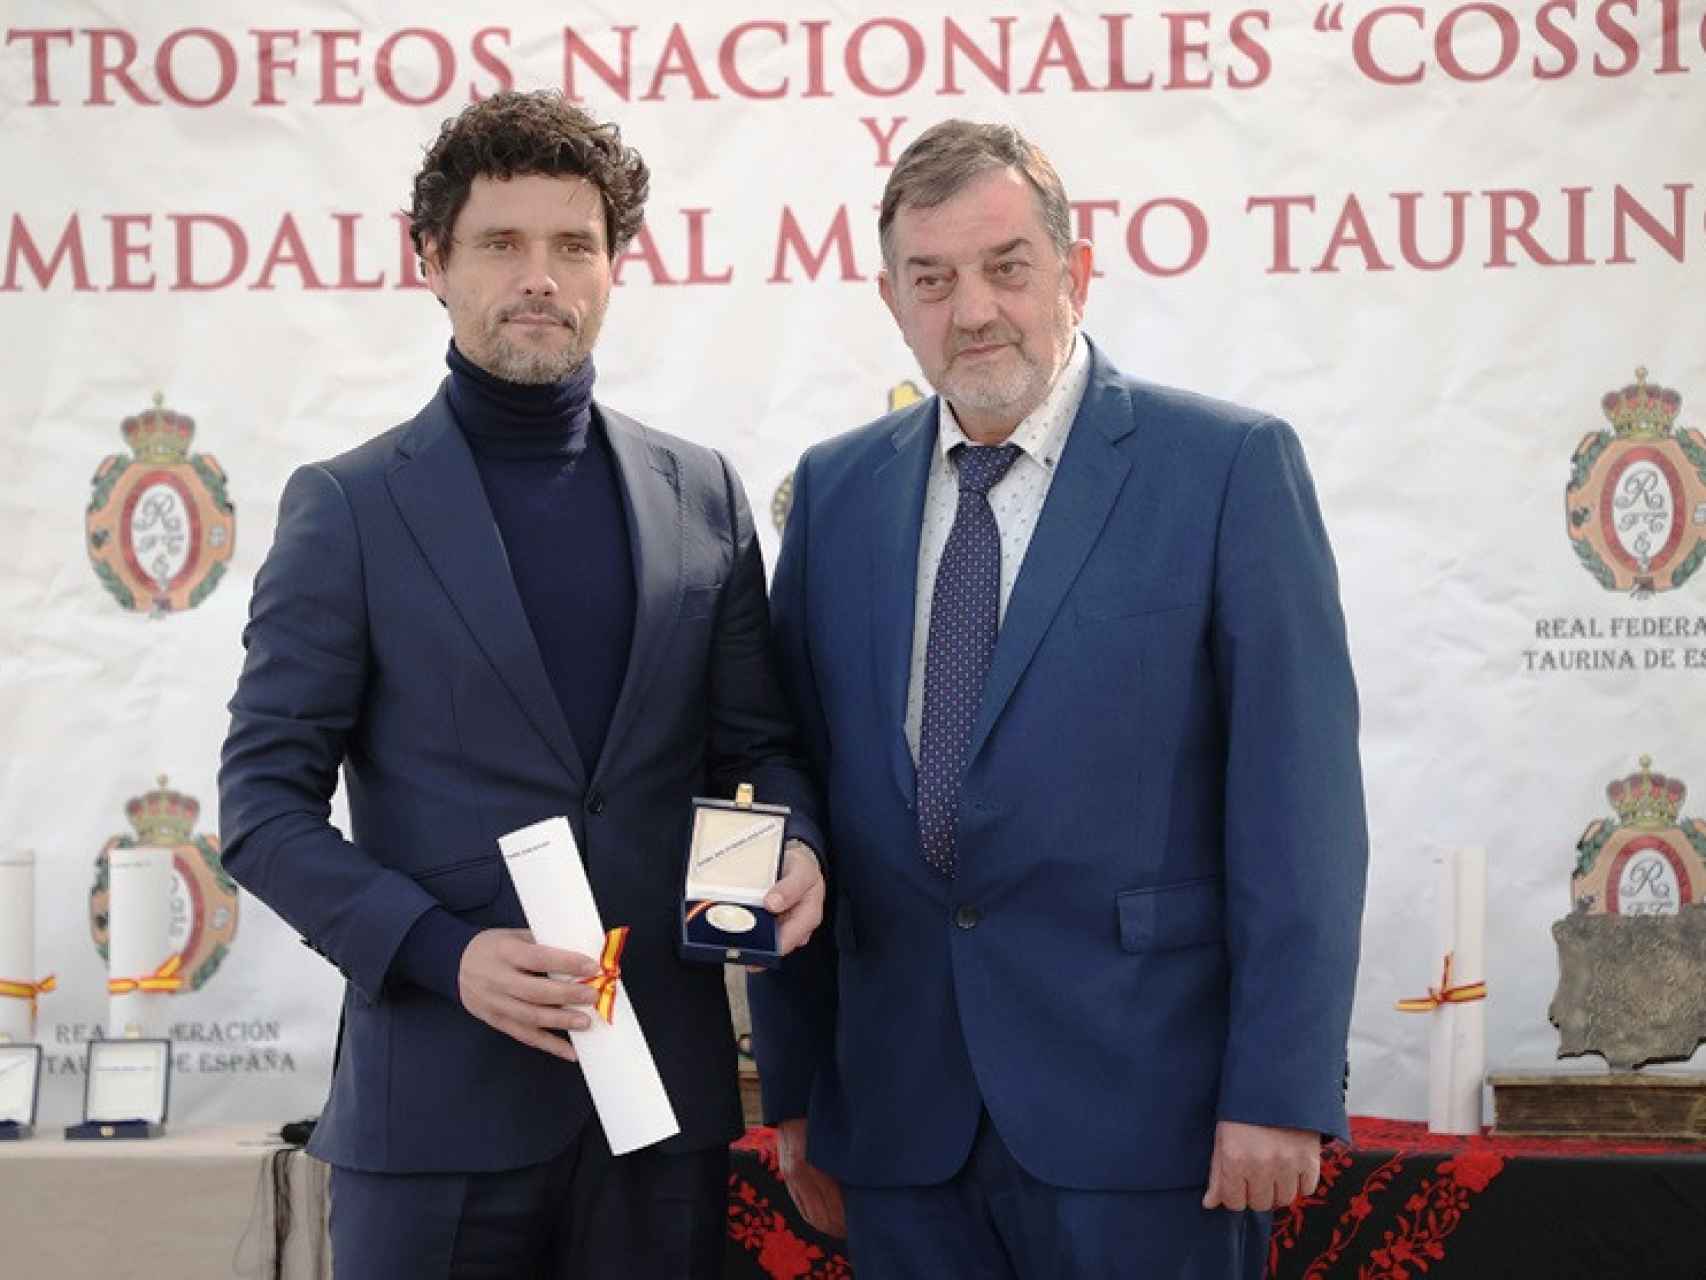 Los premiados por la Real Federación Taurina de España en la Gran Gala del Toreo